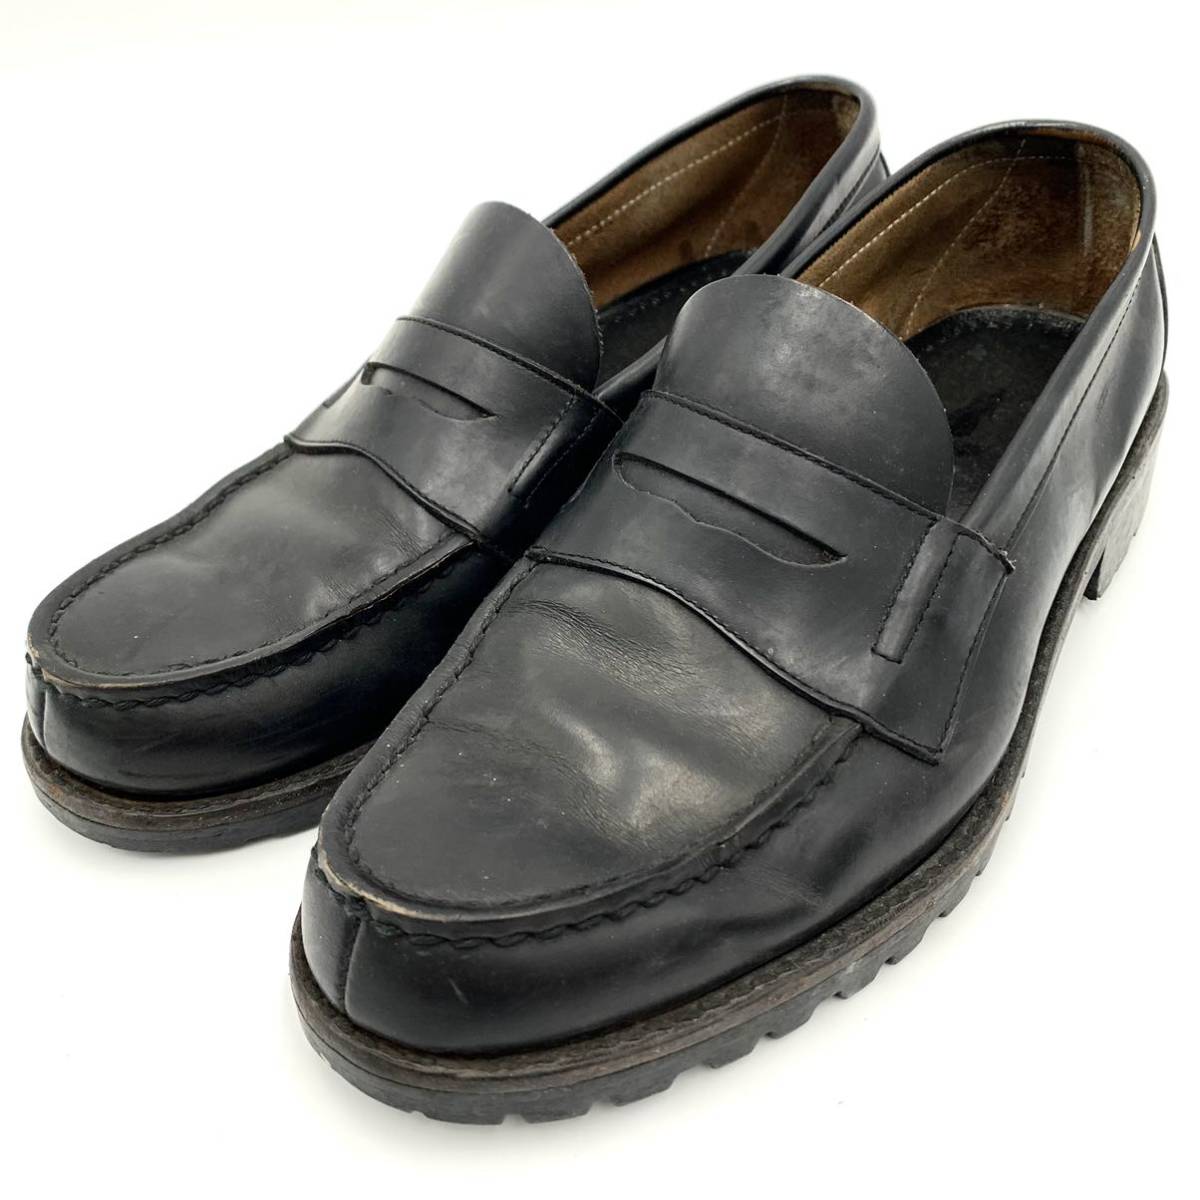 J ☆ 高級ラグジュアリー靴 '日本製' COMME des GARCONS HOMME コムデギャルソン 革靴 コインローファー ドレスシューズ 24.5cm 紳士靴 BLK